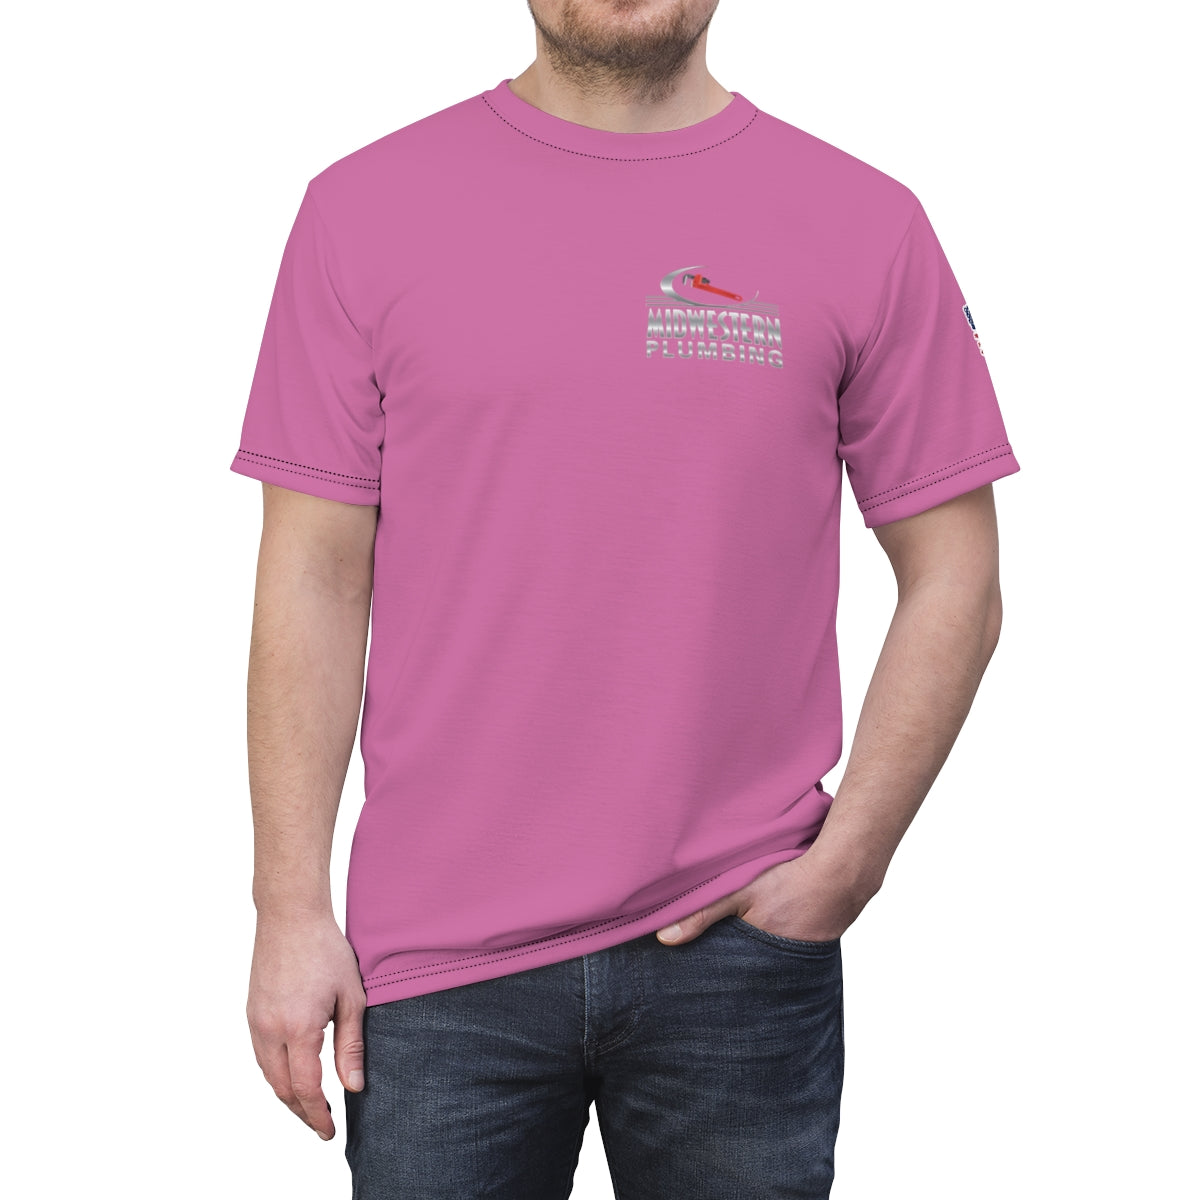 Midwestern Plumbing Light Pink Premium Work Shirt